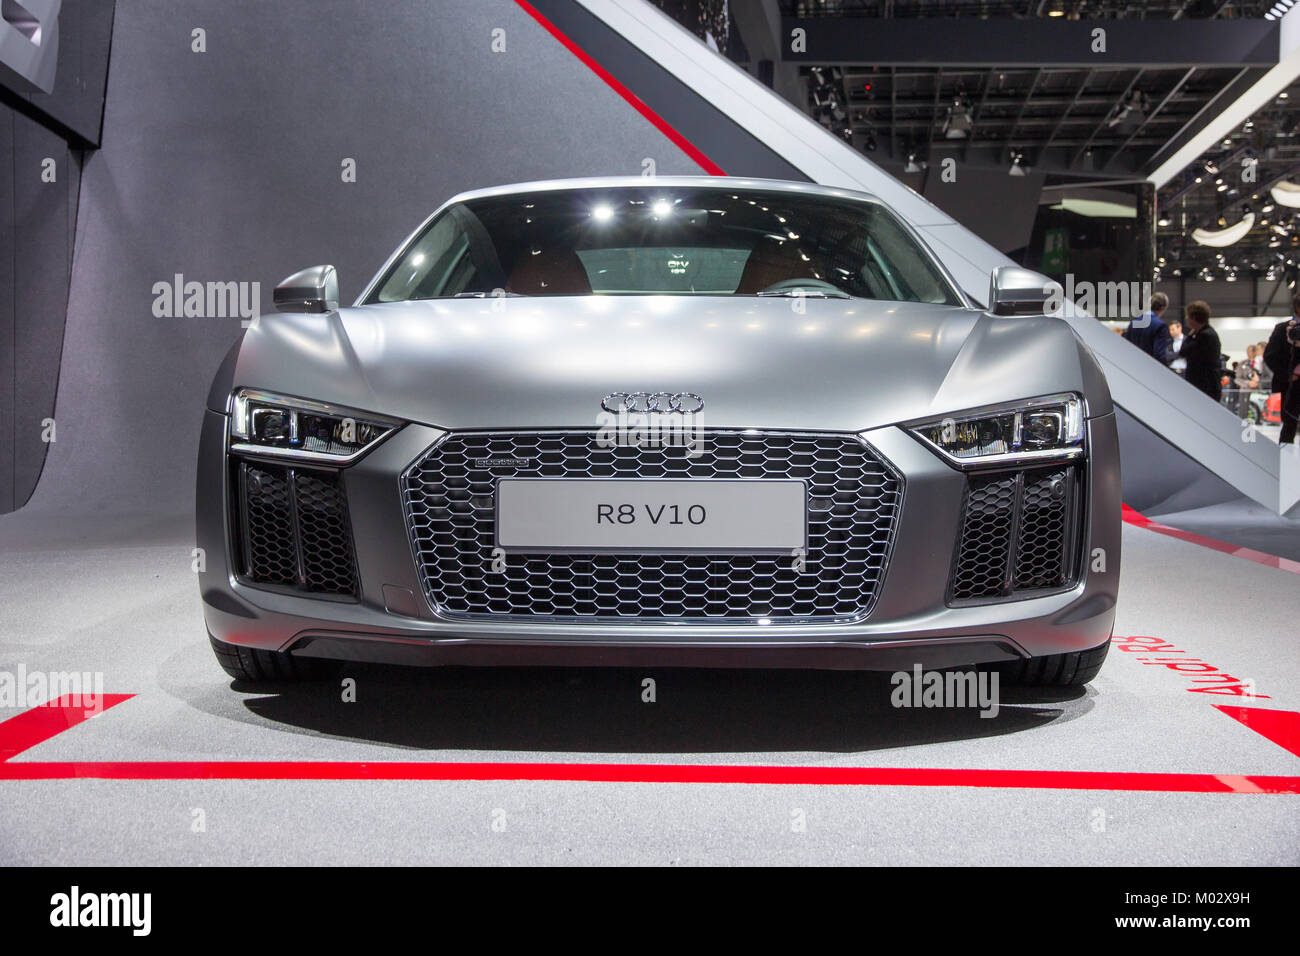 Audi Tuning Stockfotos und -bilder Kaufen - Alamy